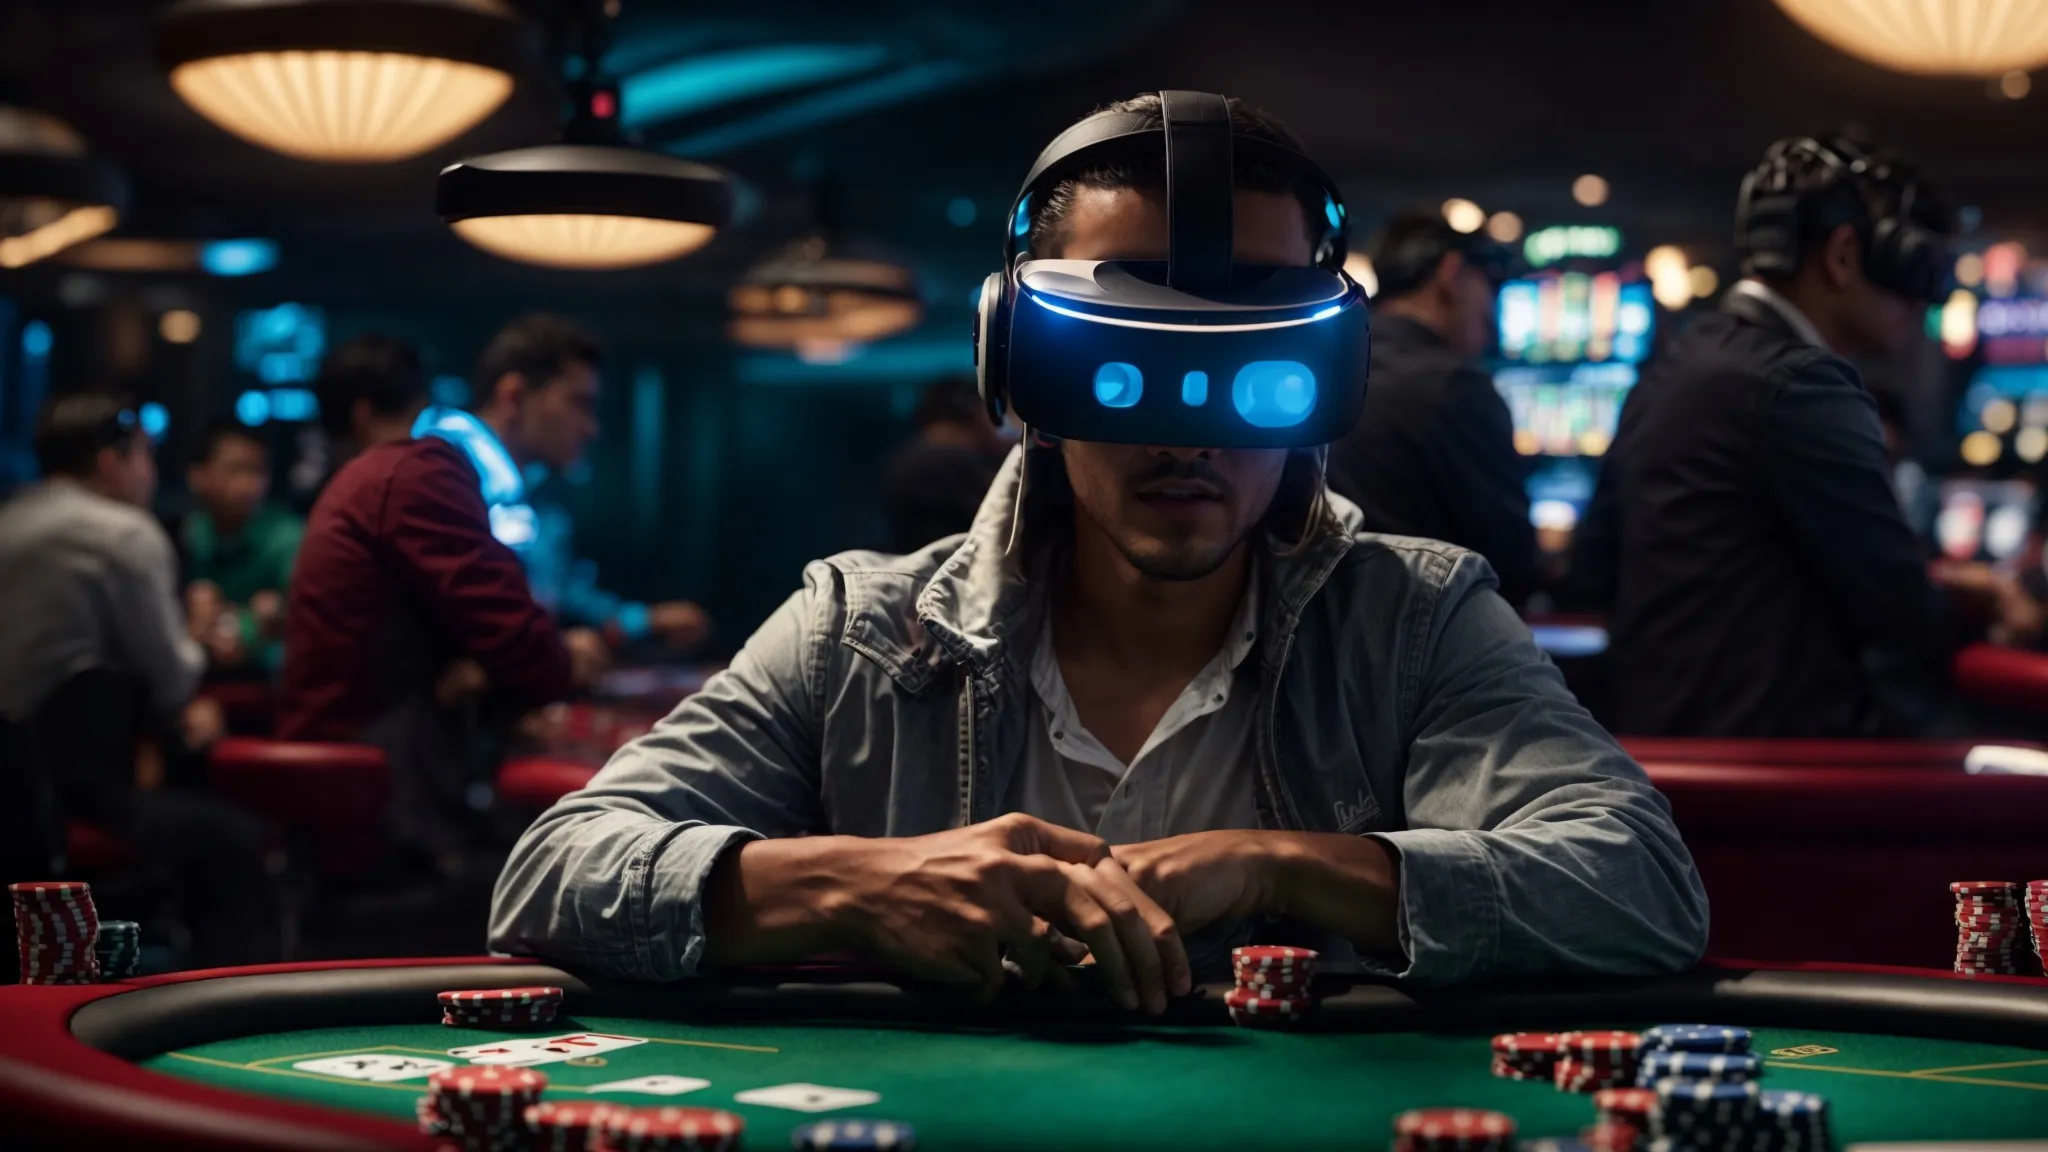 Ein Spieler, der mit einem VR-Headset ausgestattet ist, sitzt mit seinen Mitspielern an einem virtuellen Pokertisch und taucht in eine interaktive digitale Casinoumgebung ein.